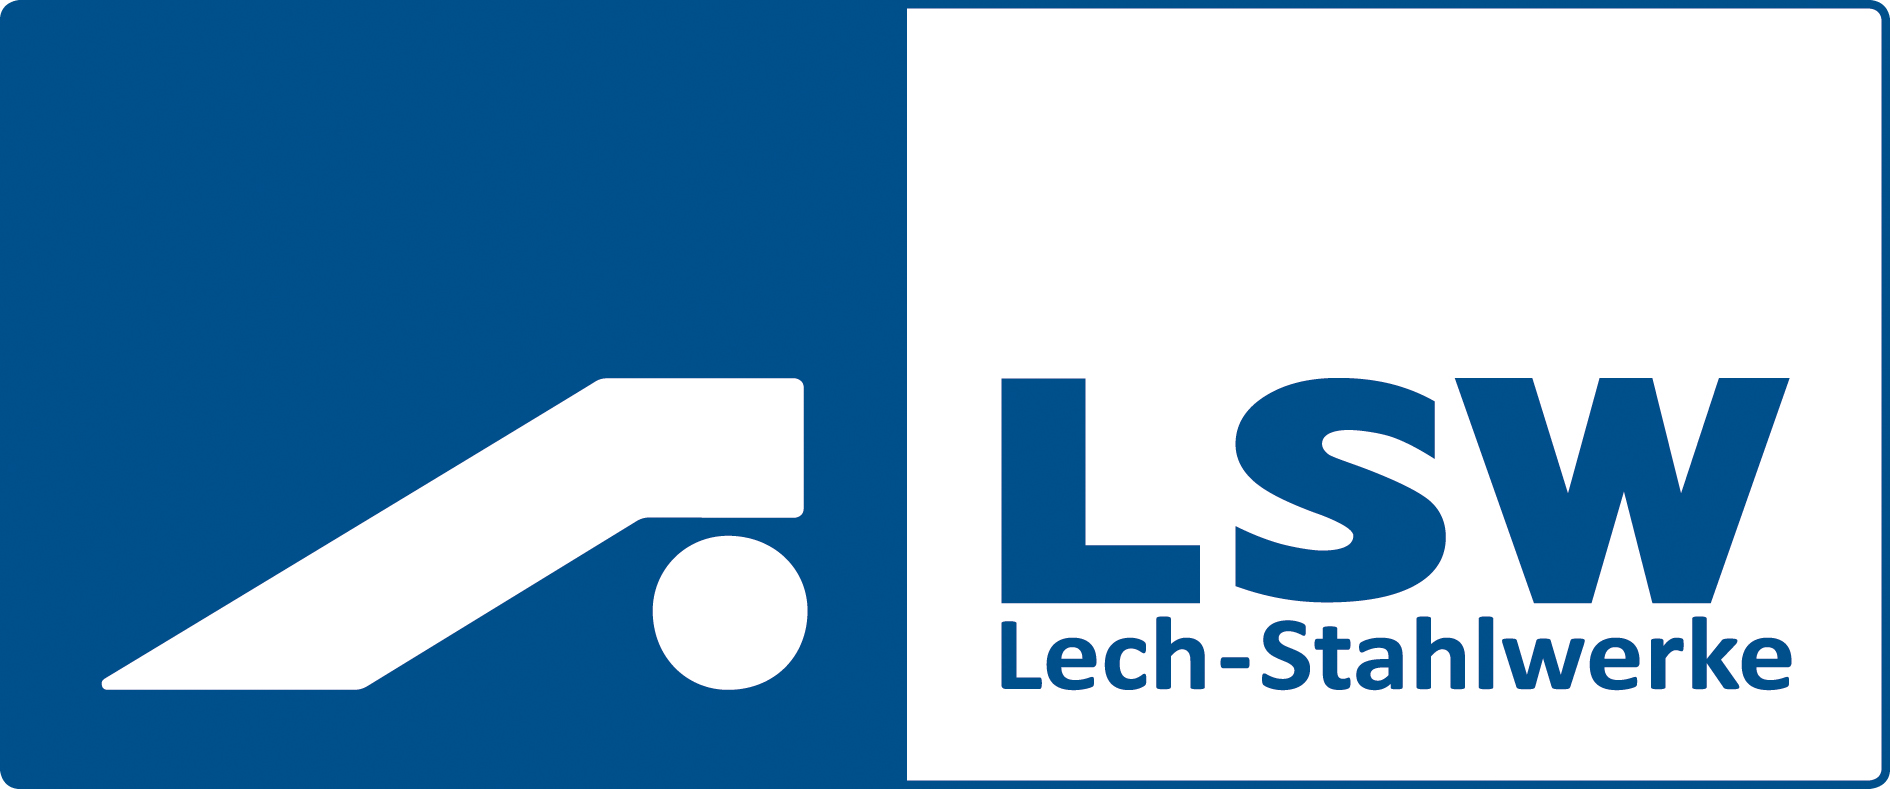 Grafcet Schulung für Lech-Stahlwerke